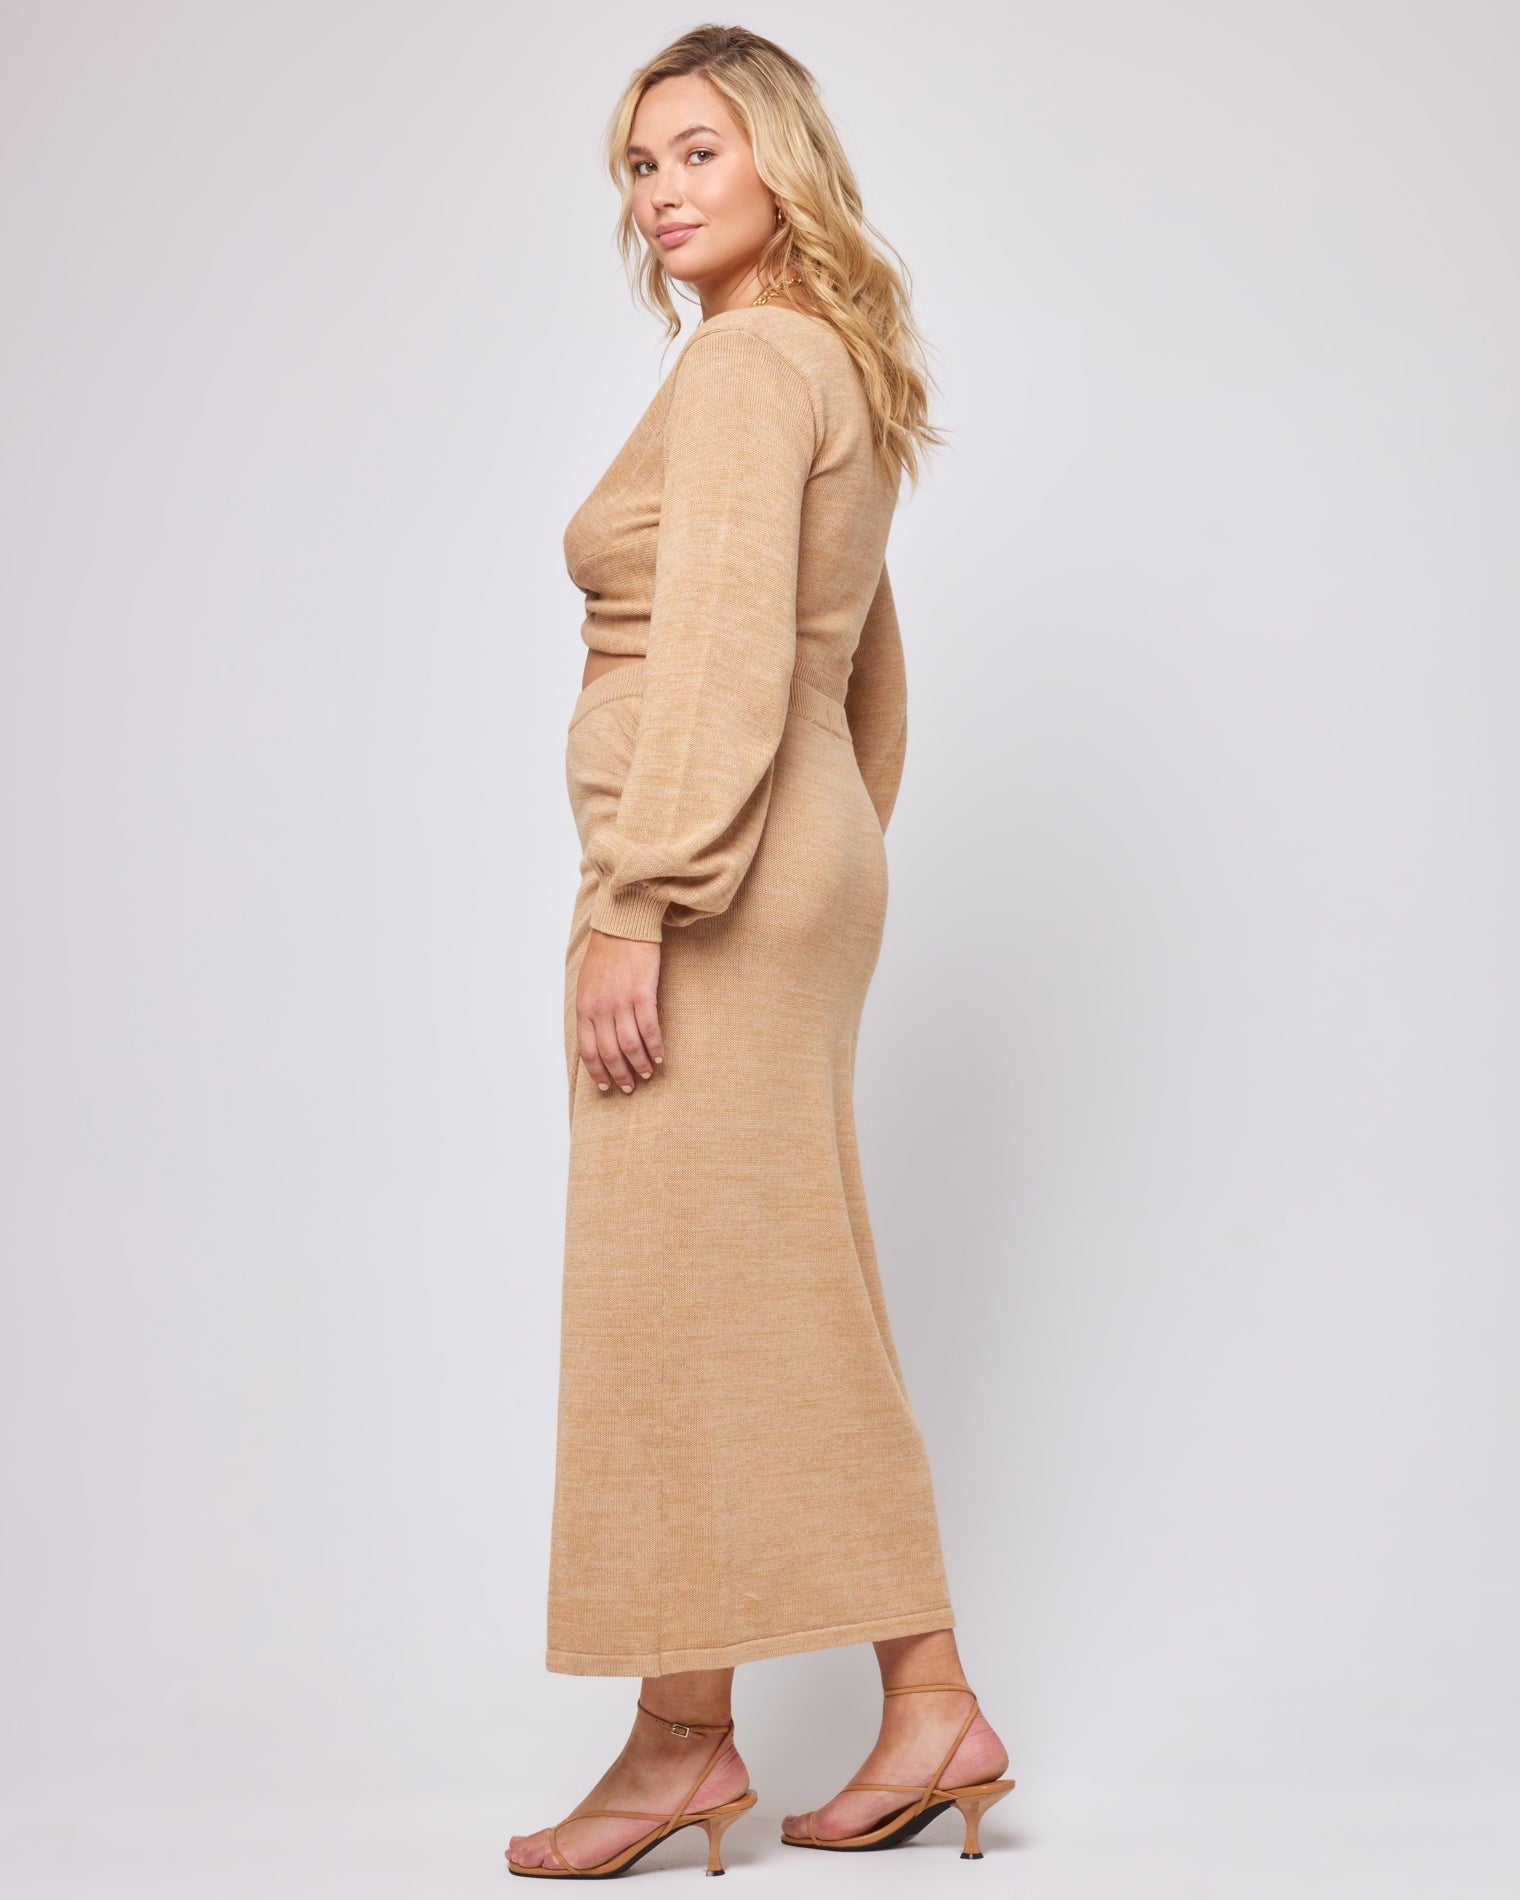 Siren Skirt - Camel Camel | Model: Sydney (size: XL)